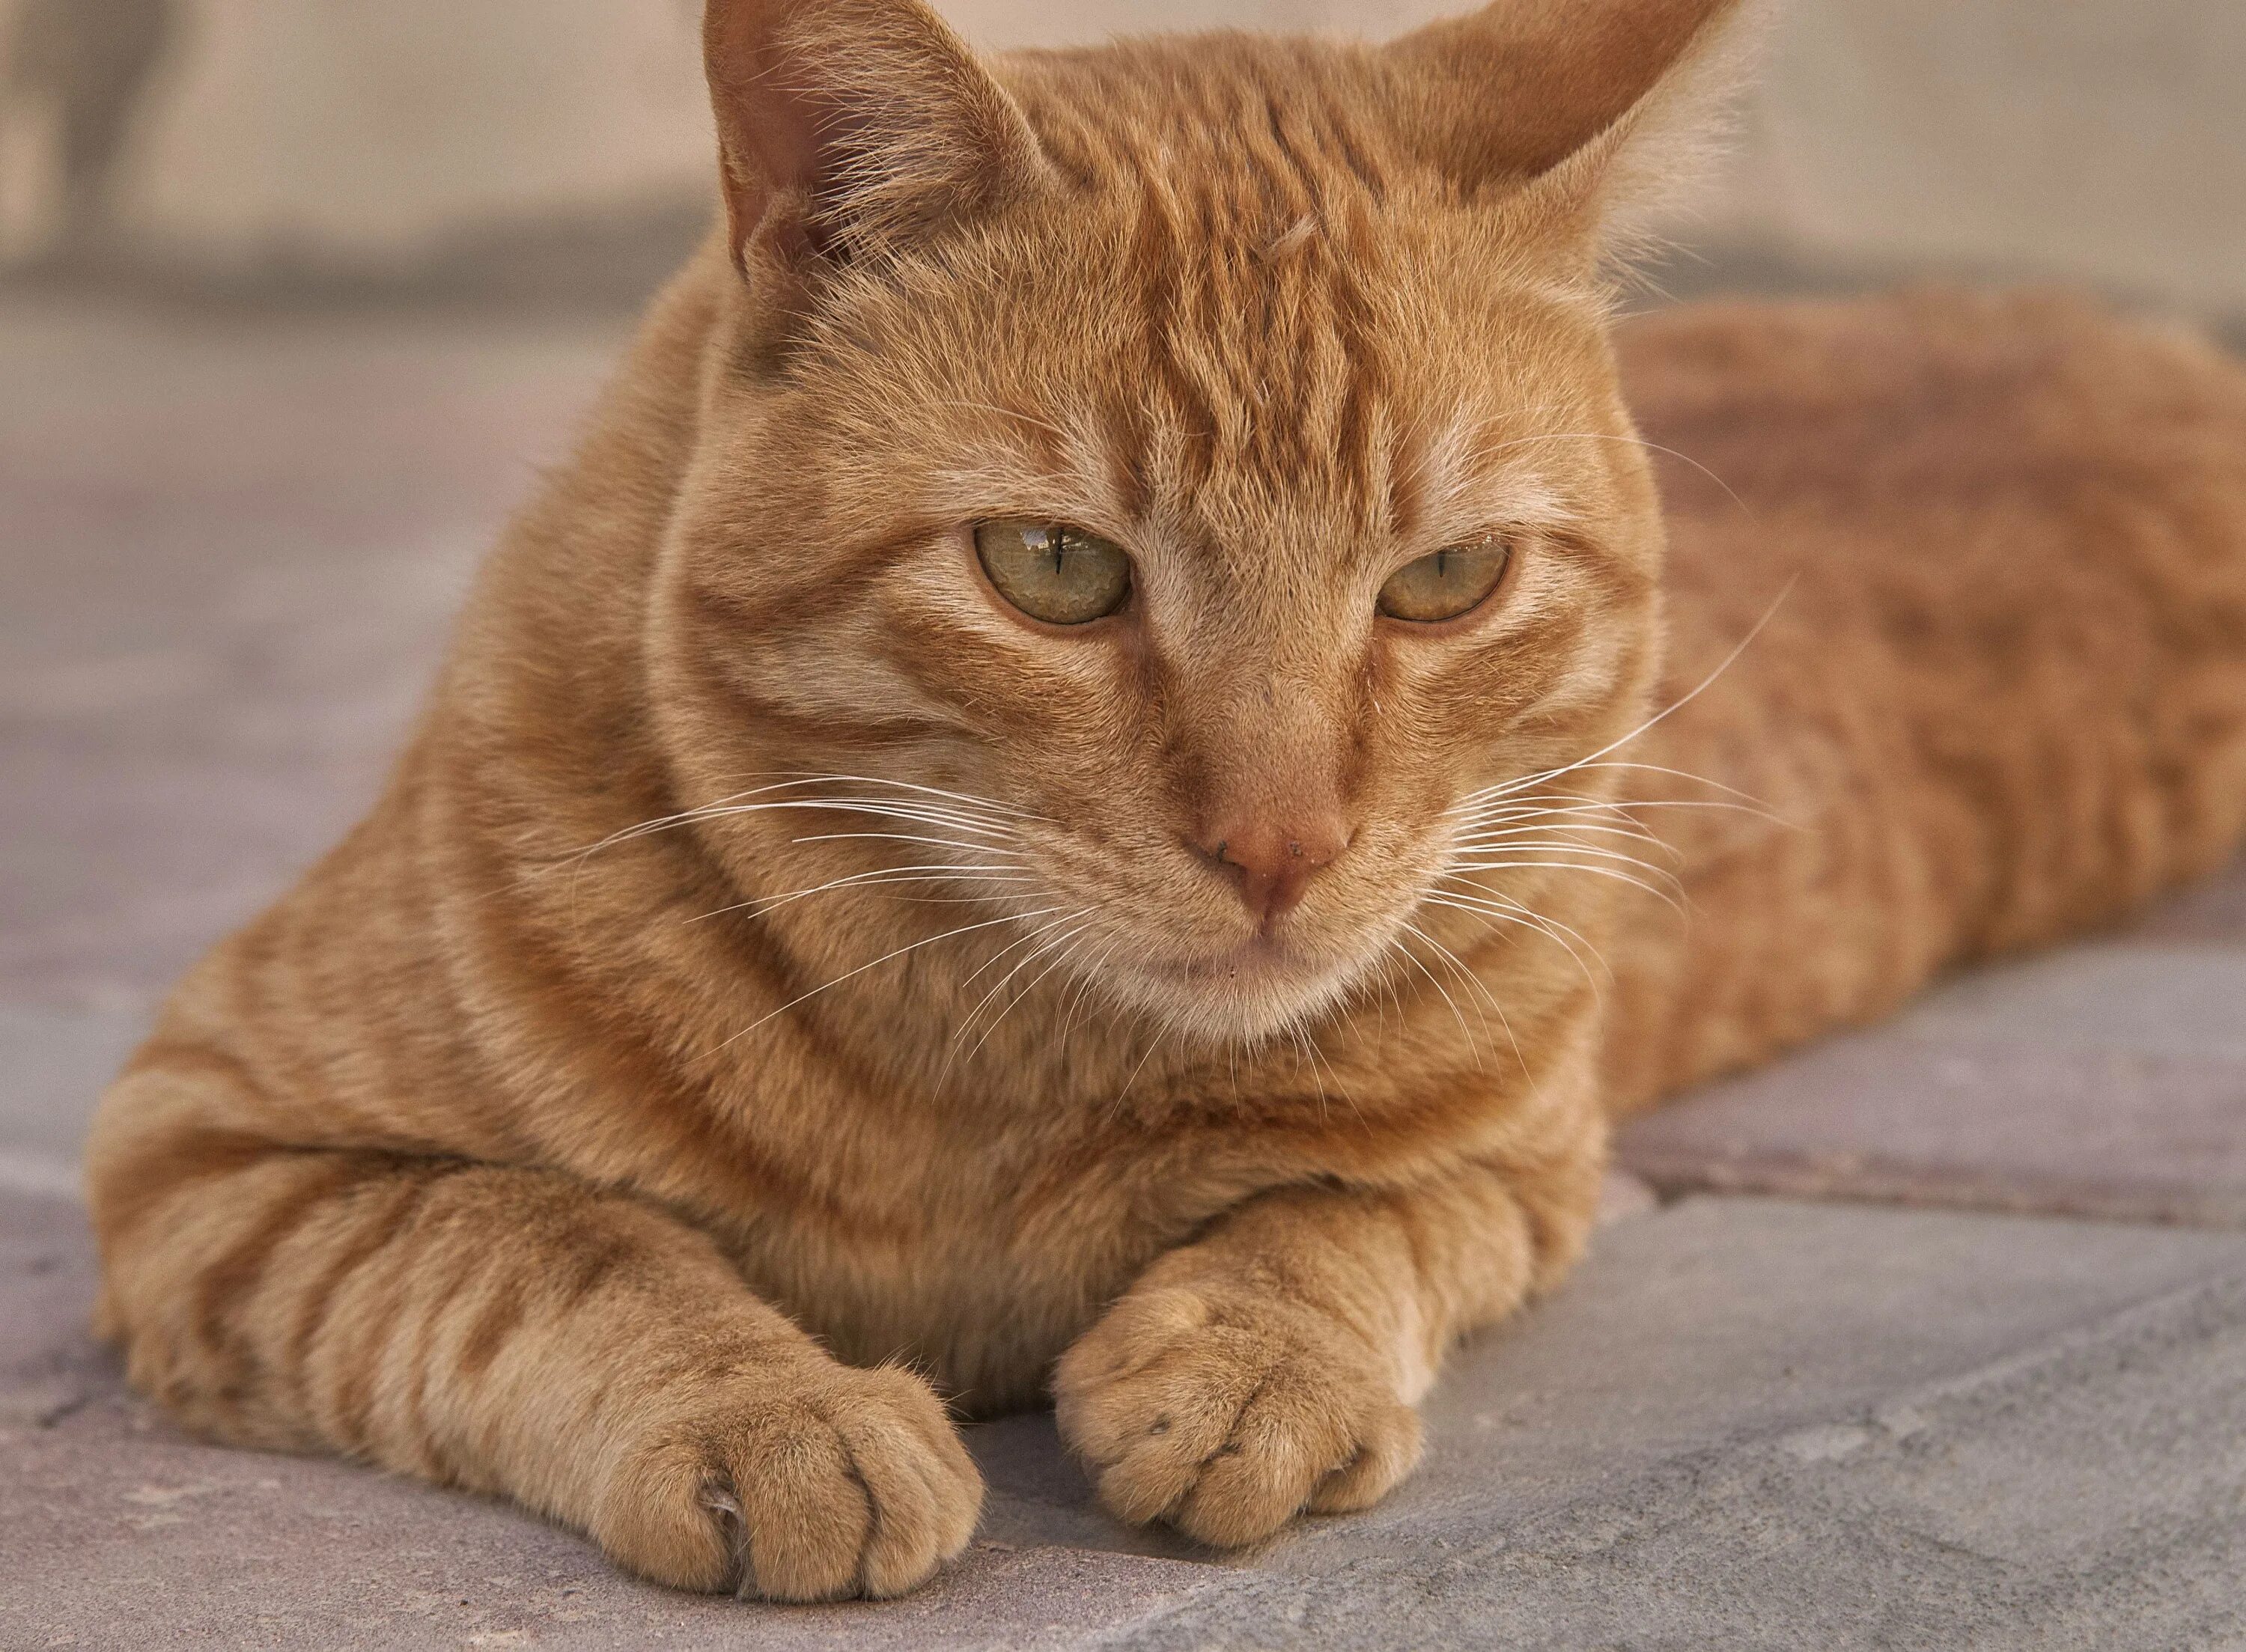 Рыжие породистые коты. Аравийский МАУ рыжий. Европейская короткошерстная табби рыжий. Бразильская короткошерстная кошка рыжая. Европейский гладкошерстный кот рыжий.